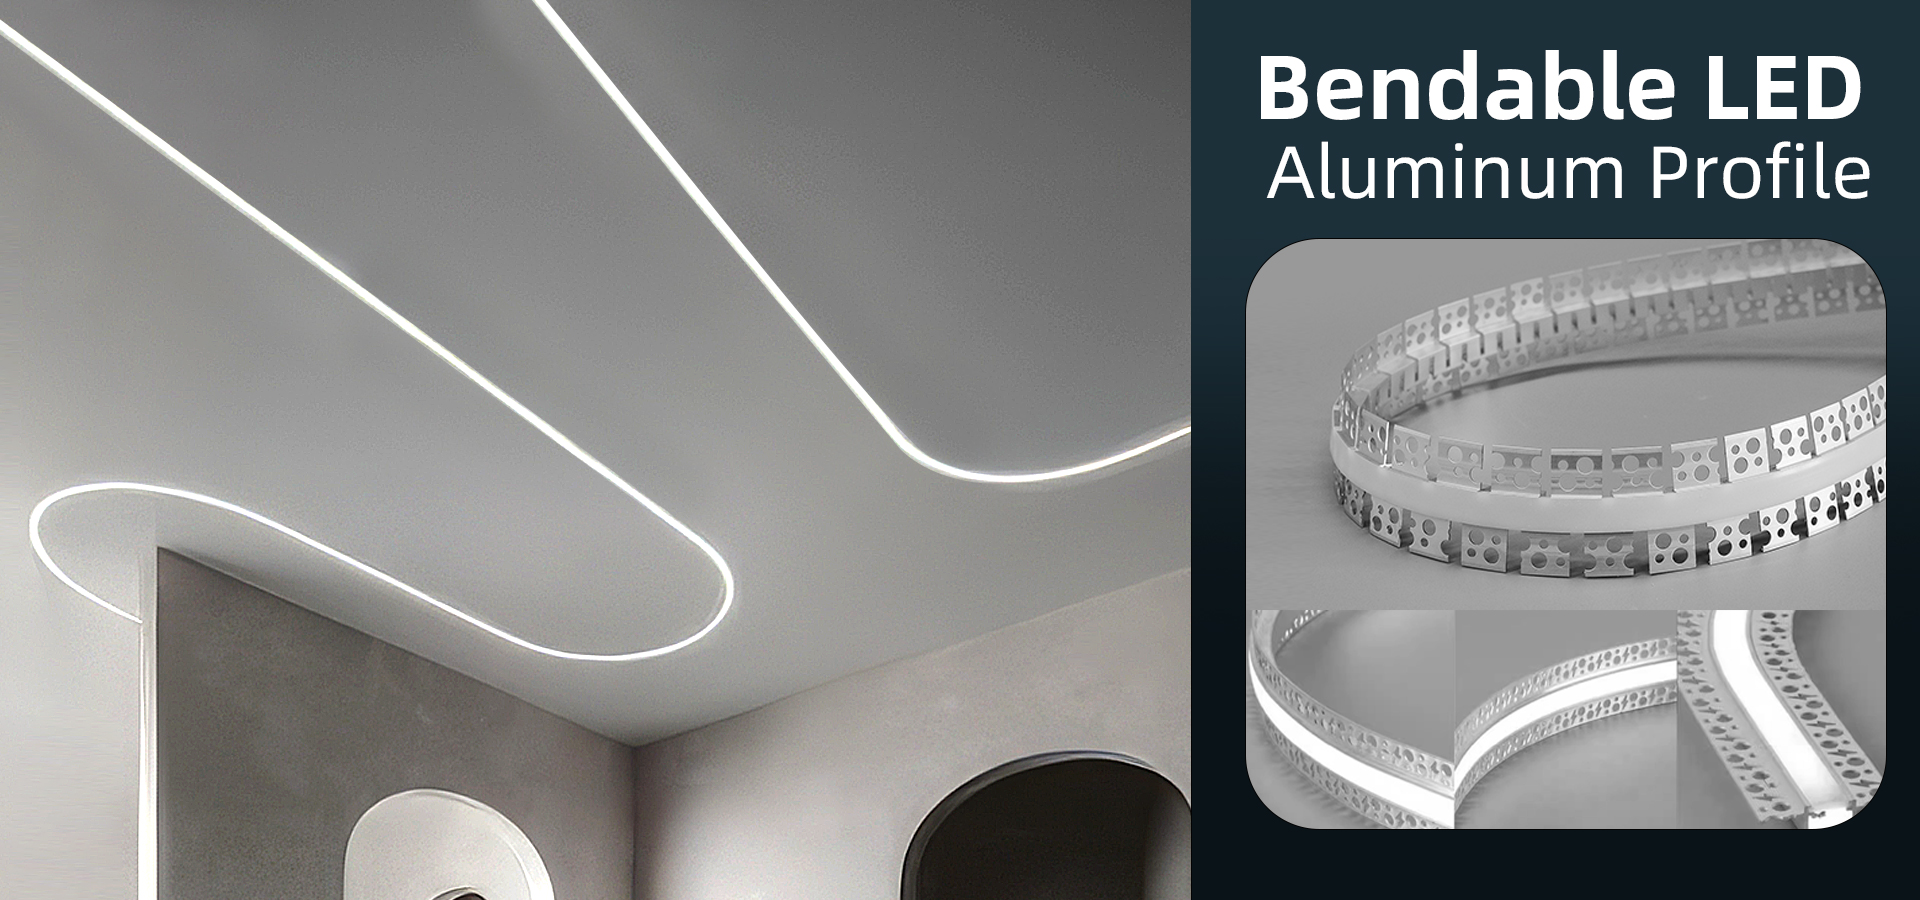 BendableLED Aluminum Profile